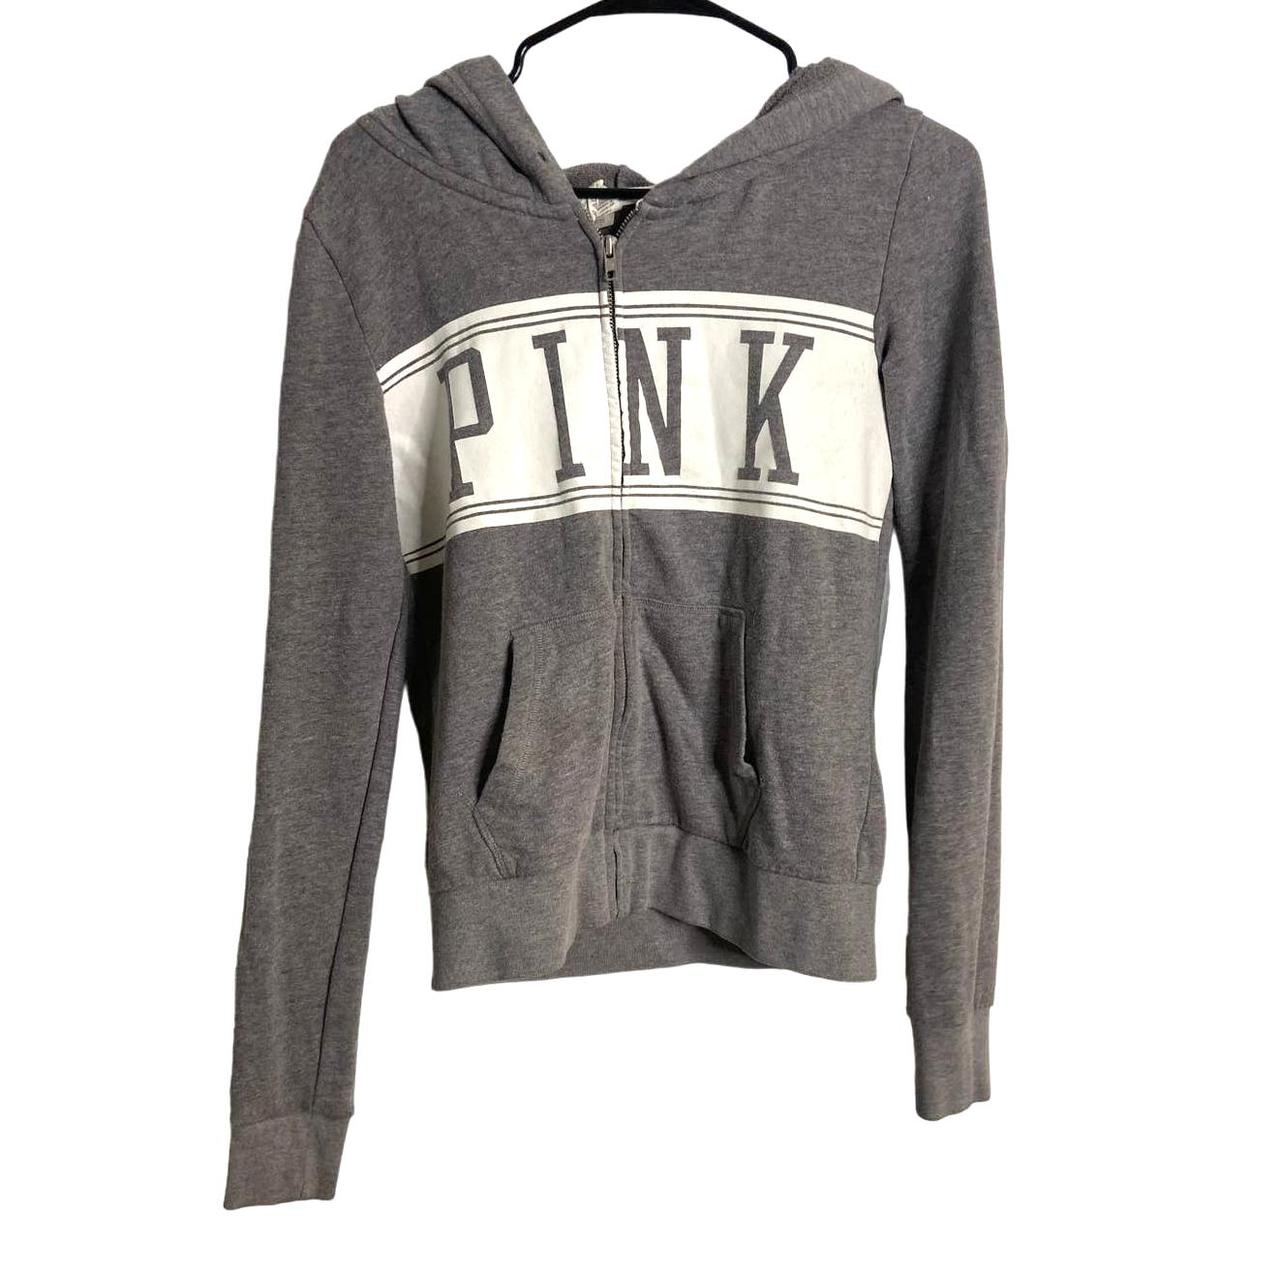 Victoria's Secret Pink Women's Sweatshirt - Grey - S